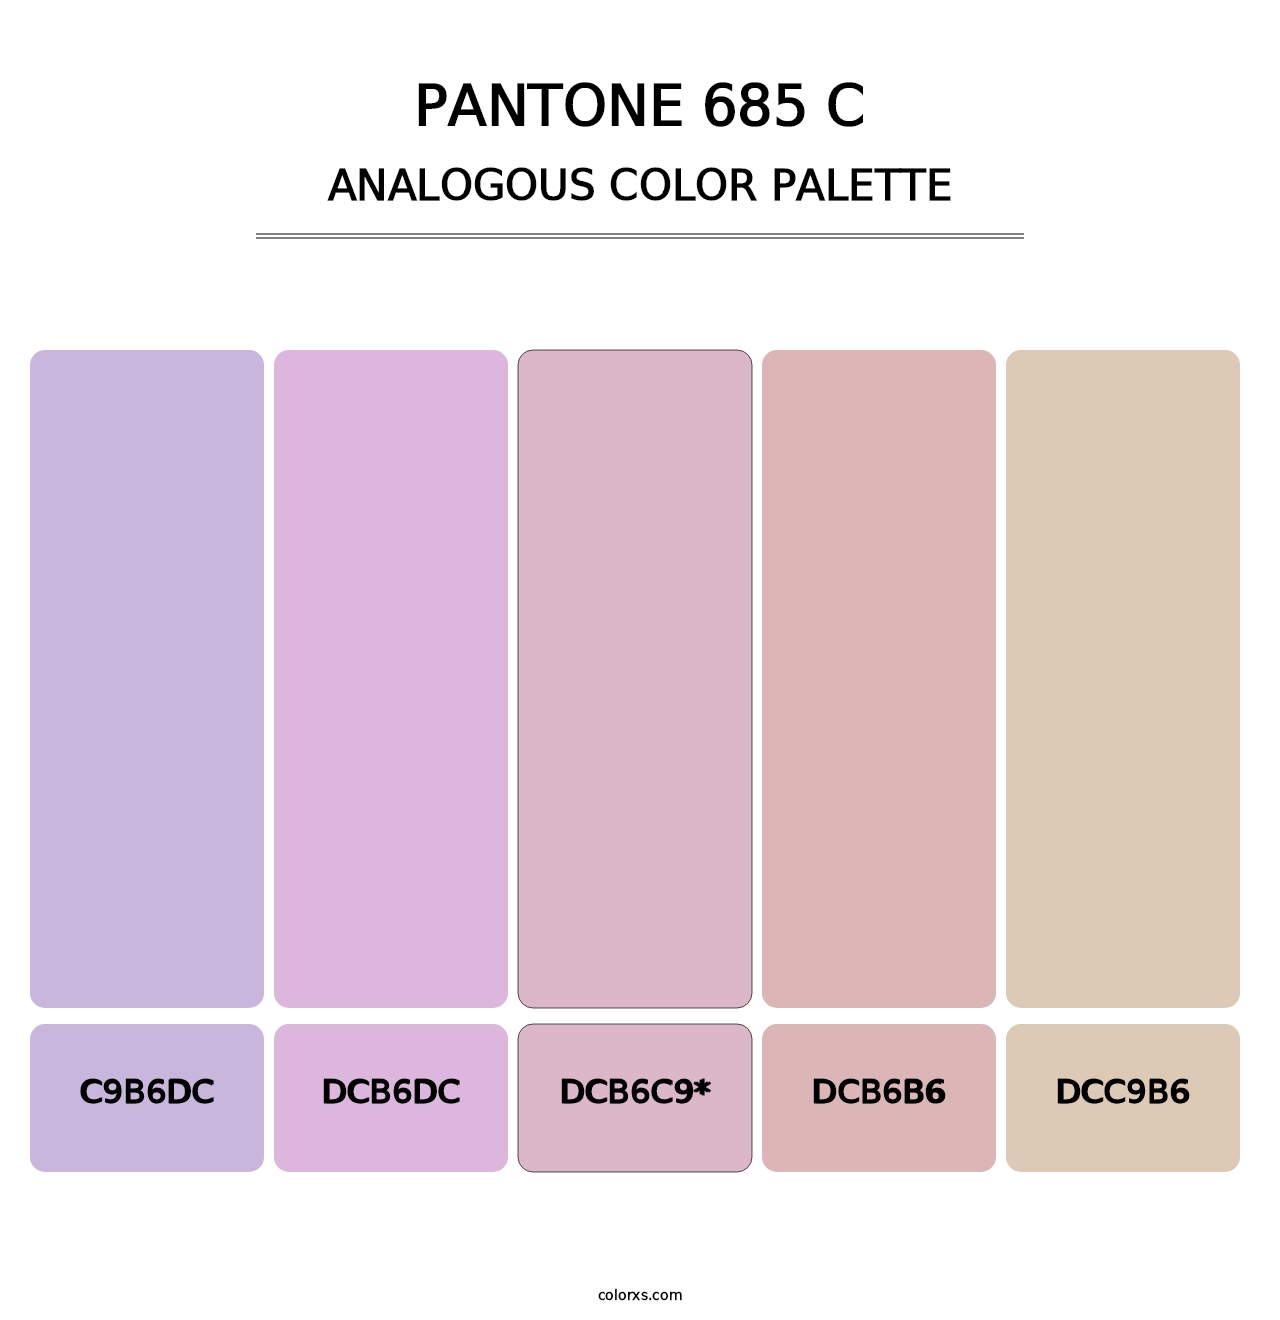 PANTONE 685 C - Analogous Color Palette